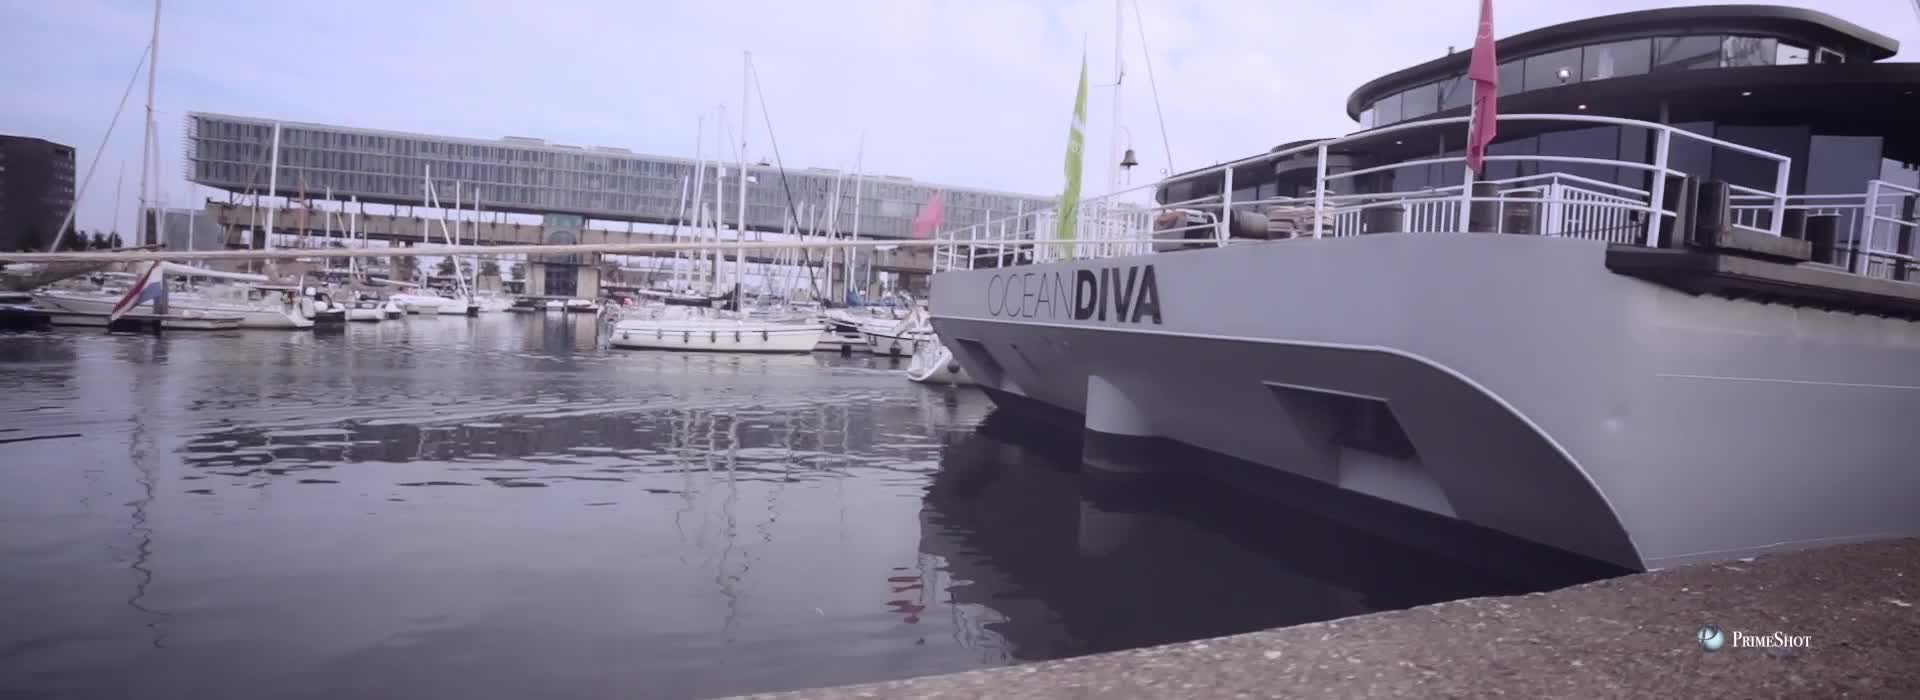 Ocean Diva - Sail Amsterdam